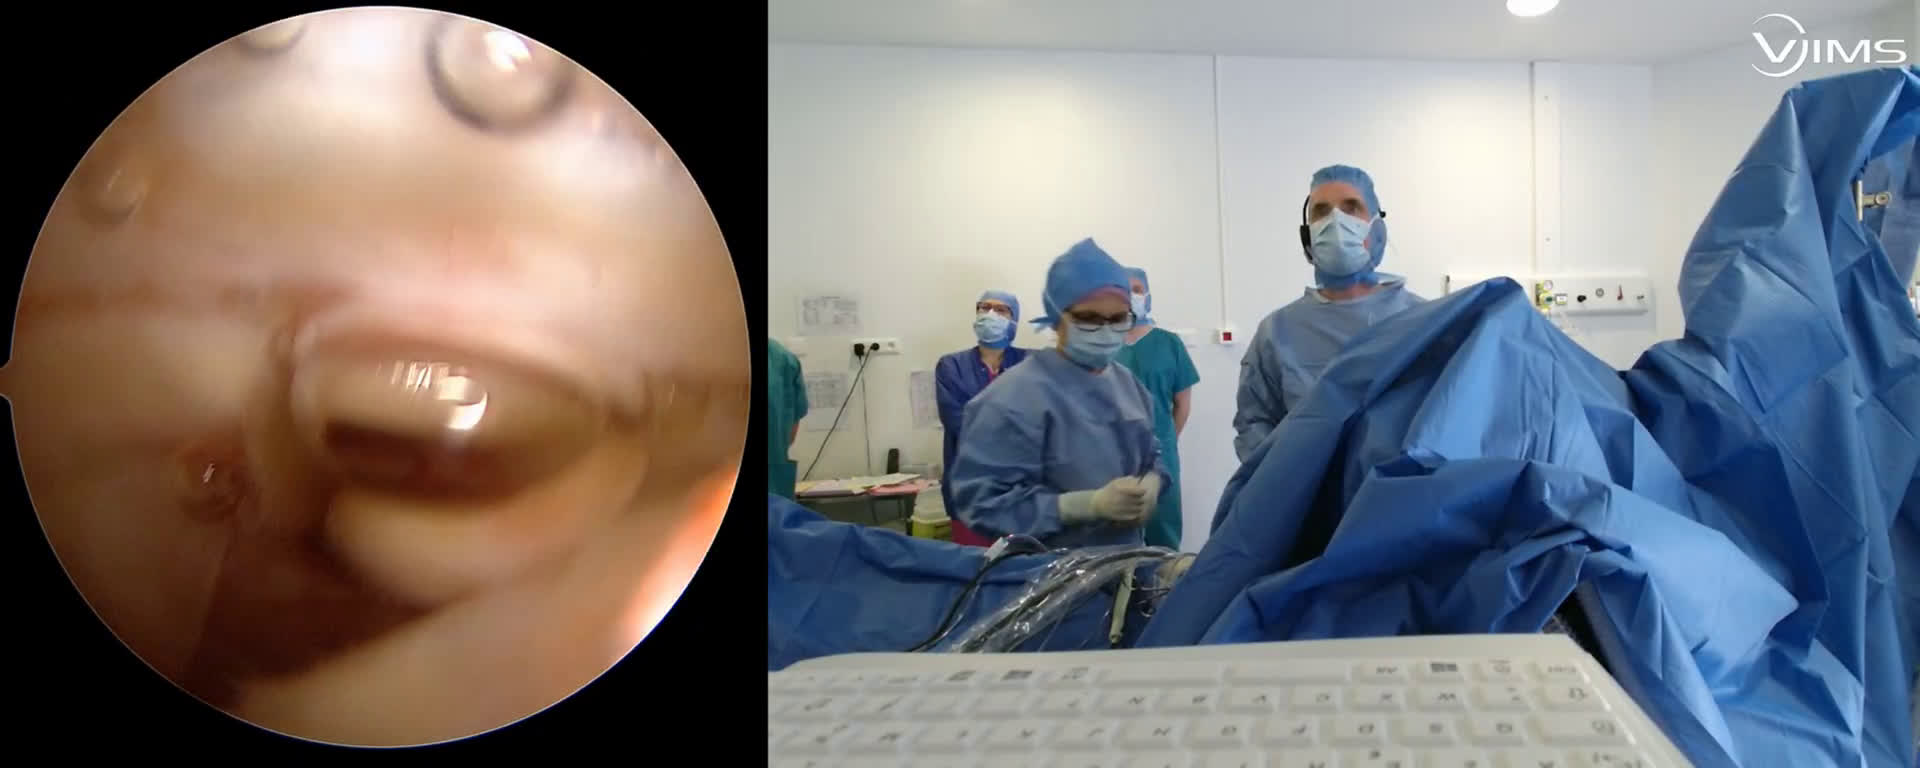 Réparation arthroscopique d'une rupture massive de la coiffe des rotateurs de l'épaule (Dr. Joudet)